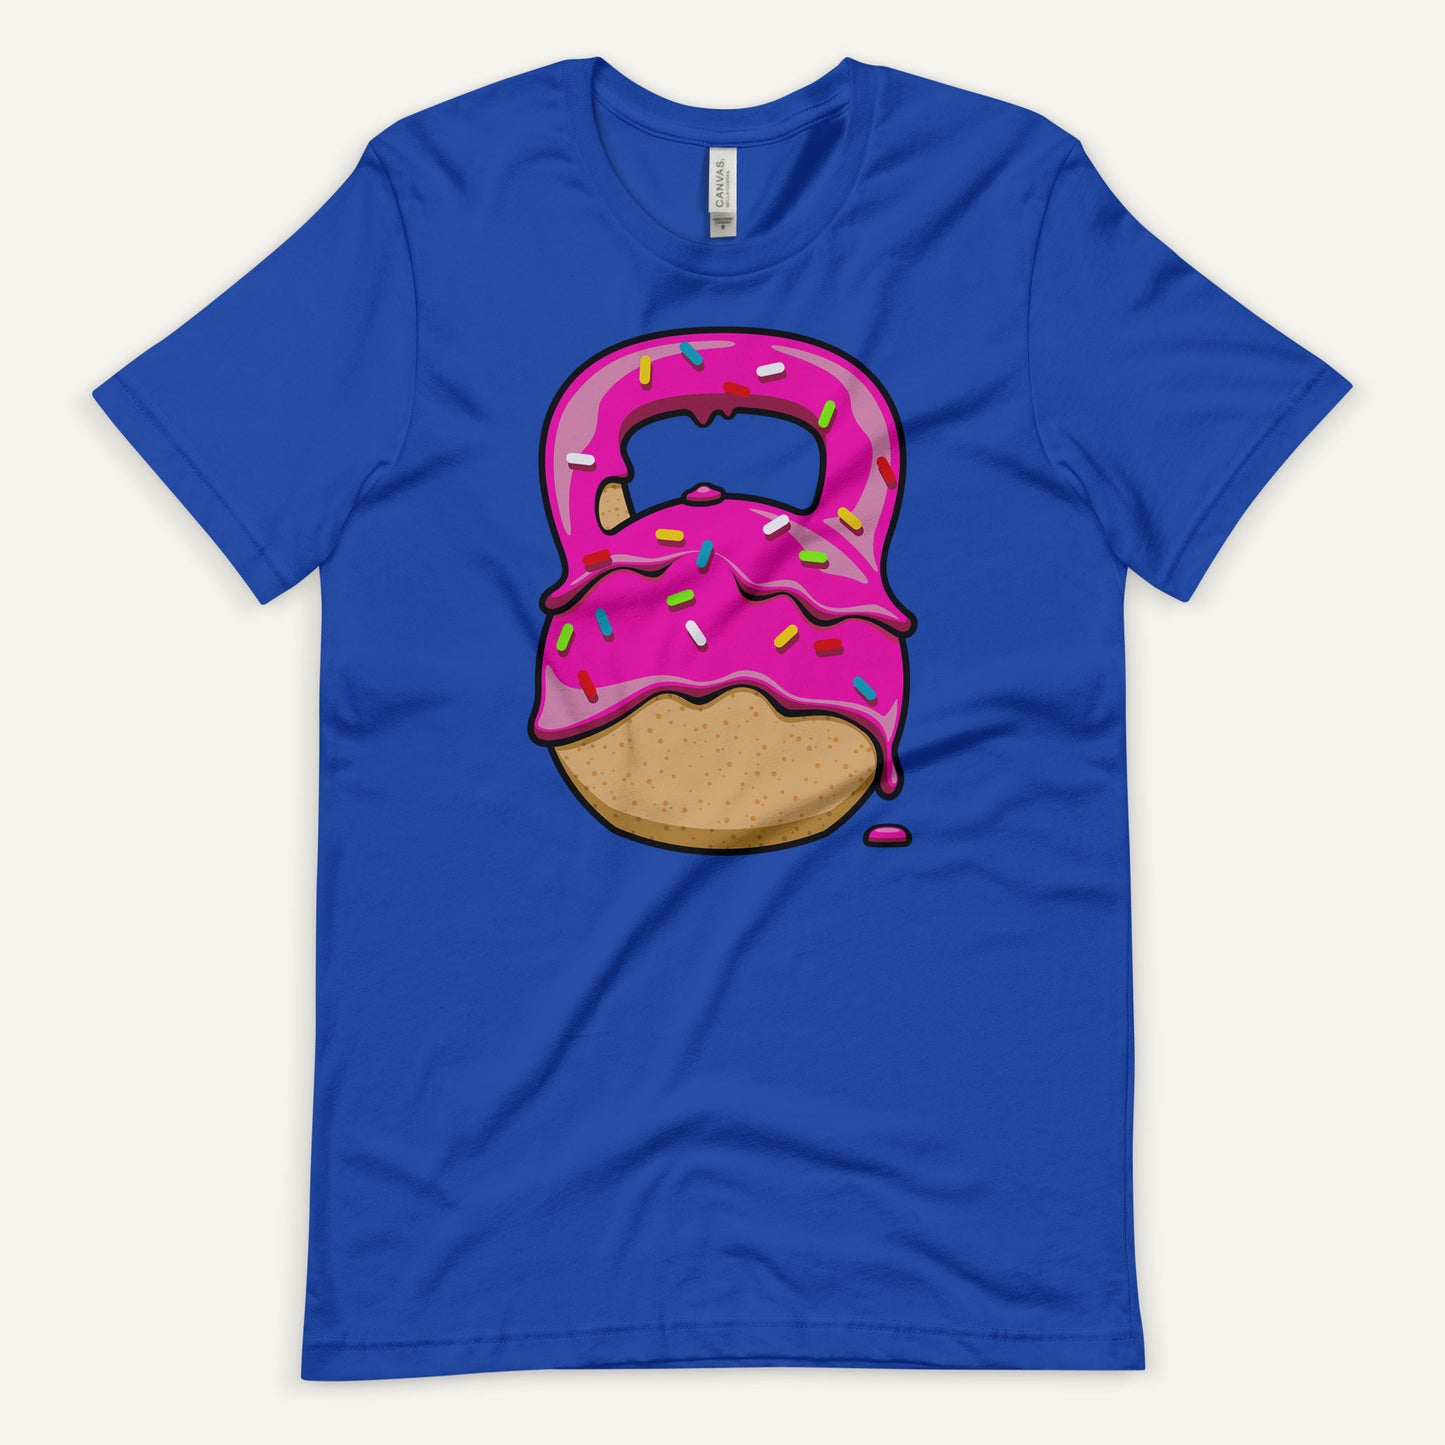 Pink-Glazed Donut With Sprinkles Kettlebell Design Men’s Standard T-Shirt